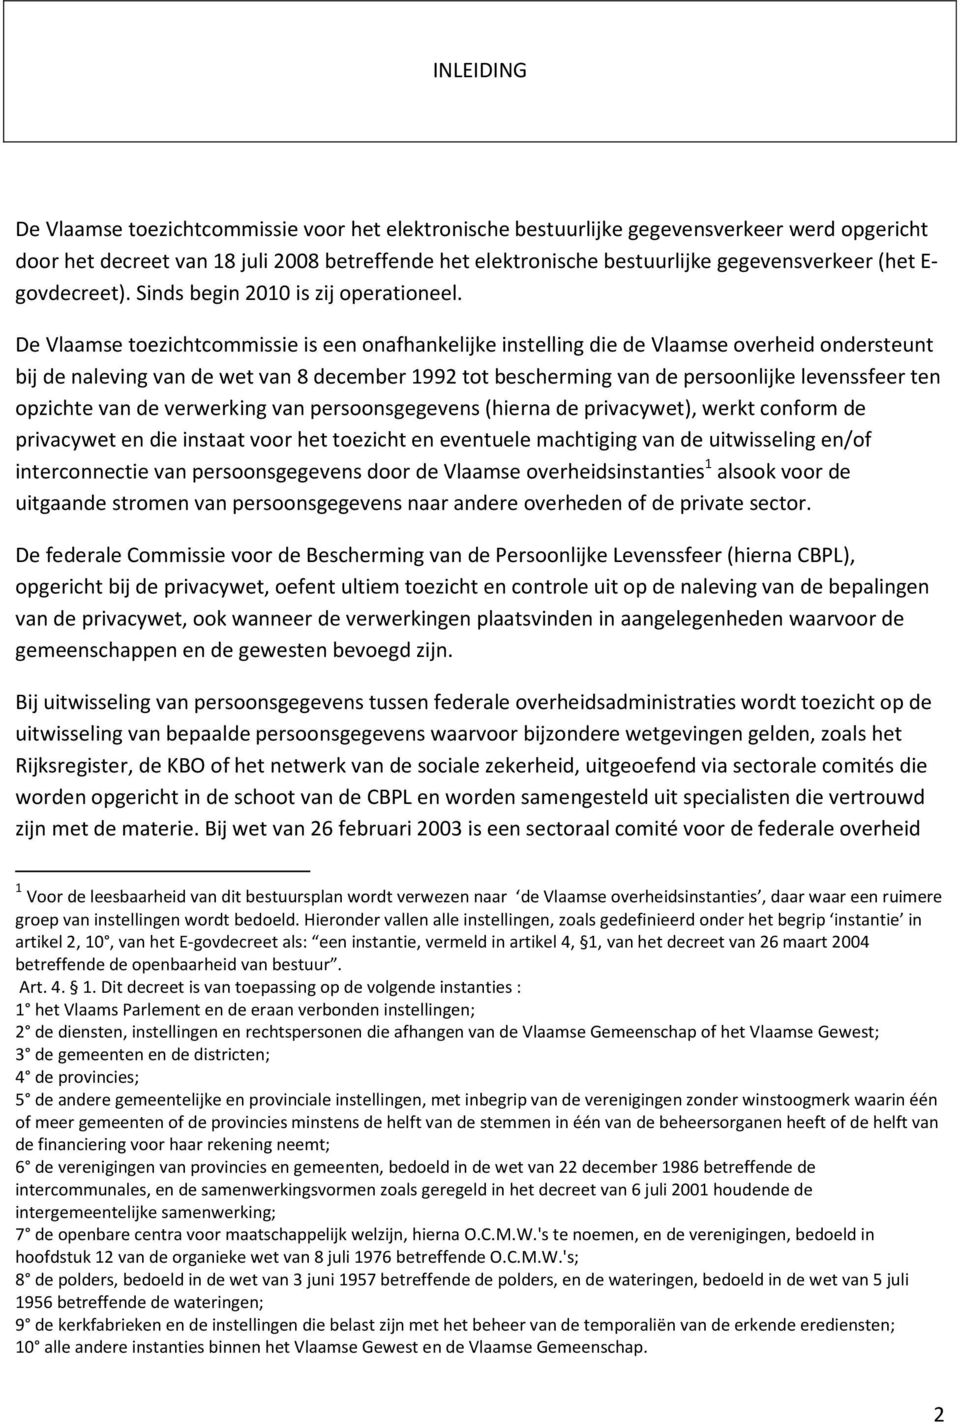 De Vlaamse toezichtcommissie is een onafhankelijke instelling die de Vlaamse overheid ondersteunt bij de naleving van de wet van 8 december 1992 tot bescherming van de persoonlijke levenssfeer ten